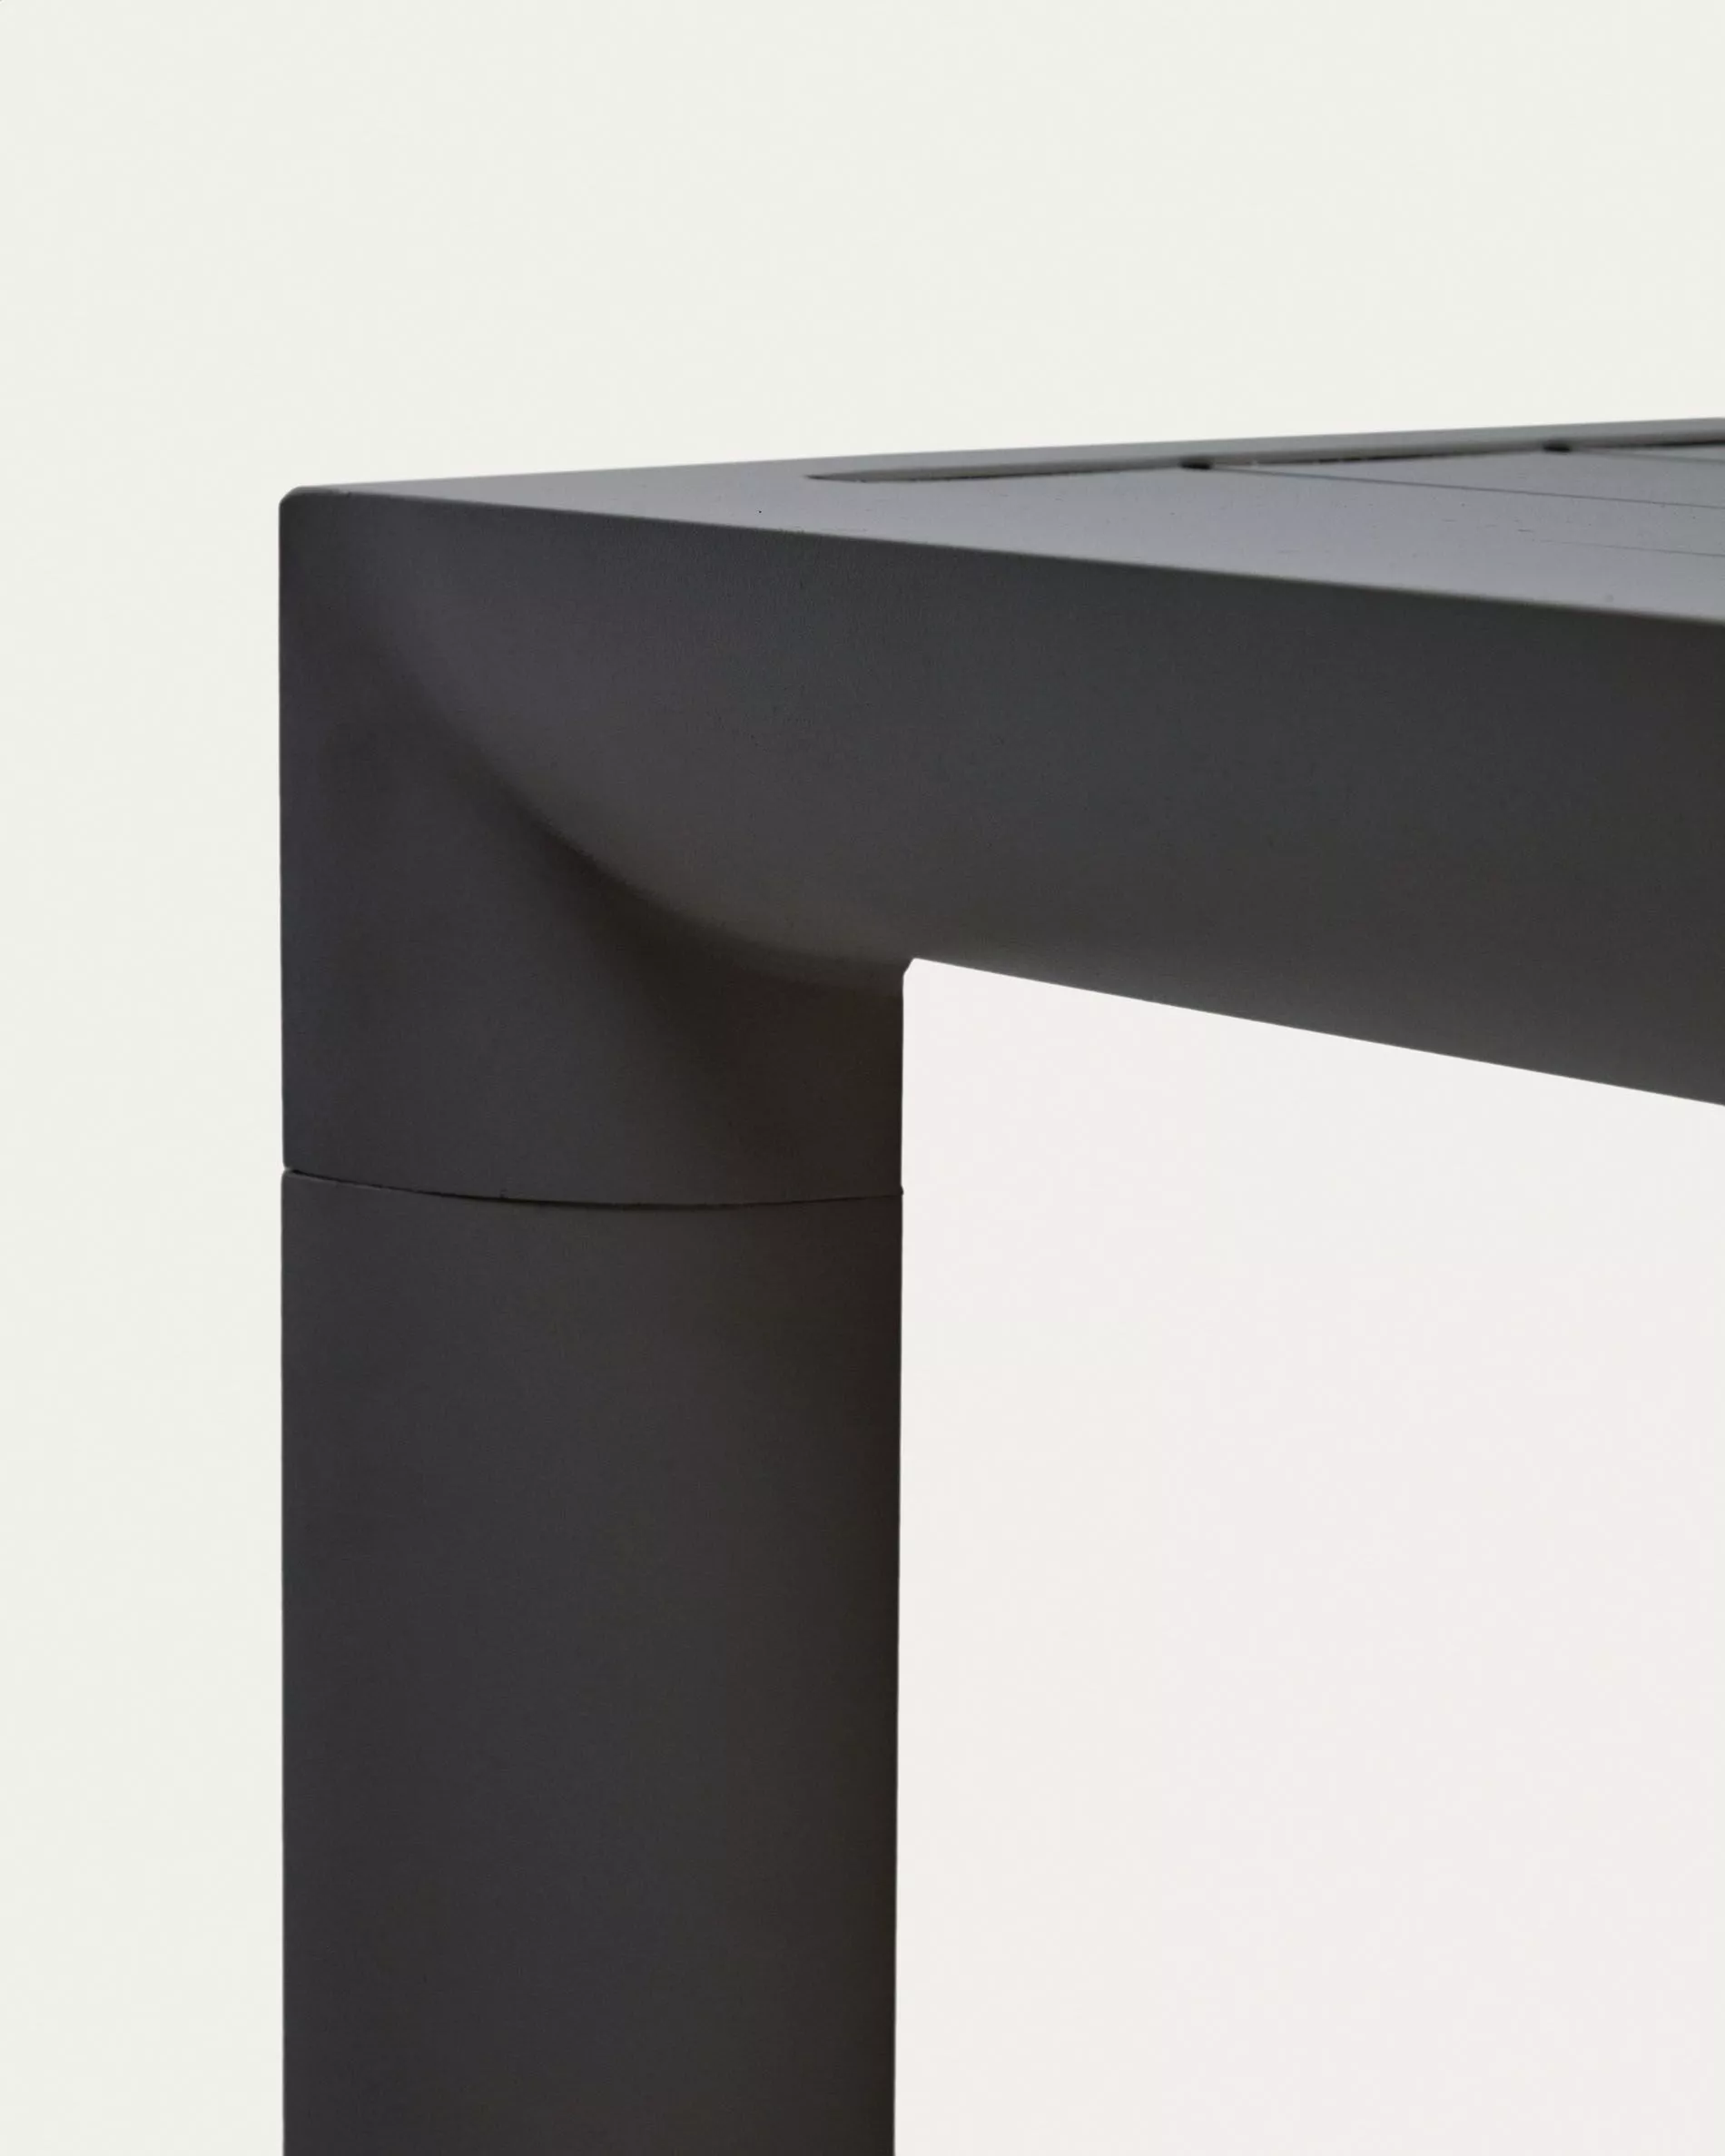 Барный стол La Forma Culip с порошковым покрытием серого цвета 150 х 77